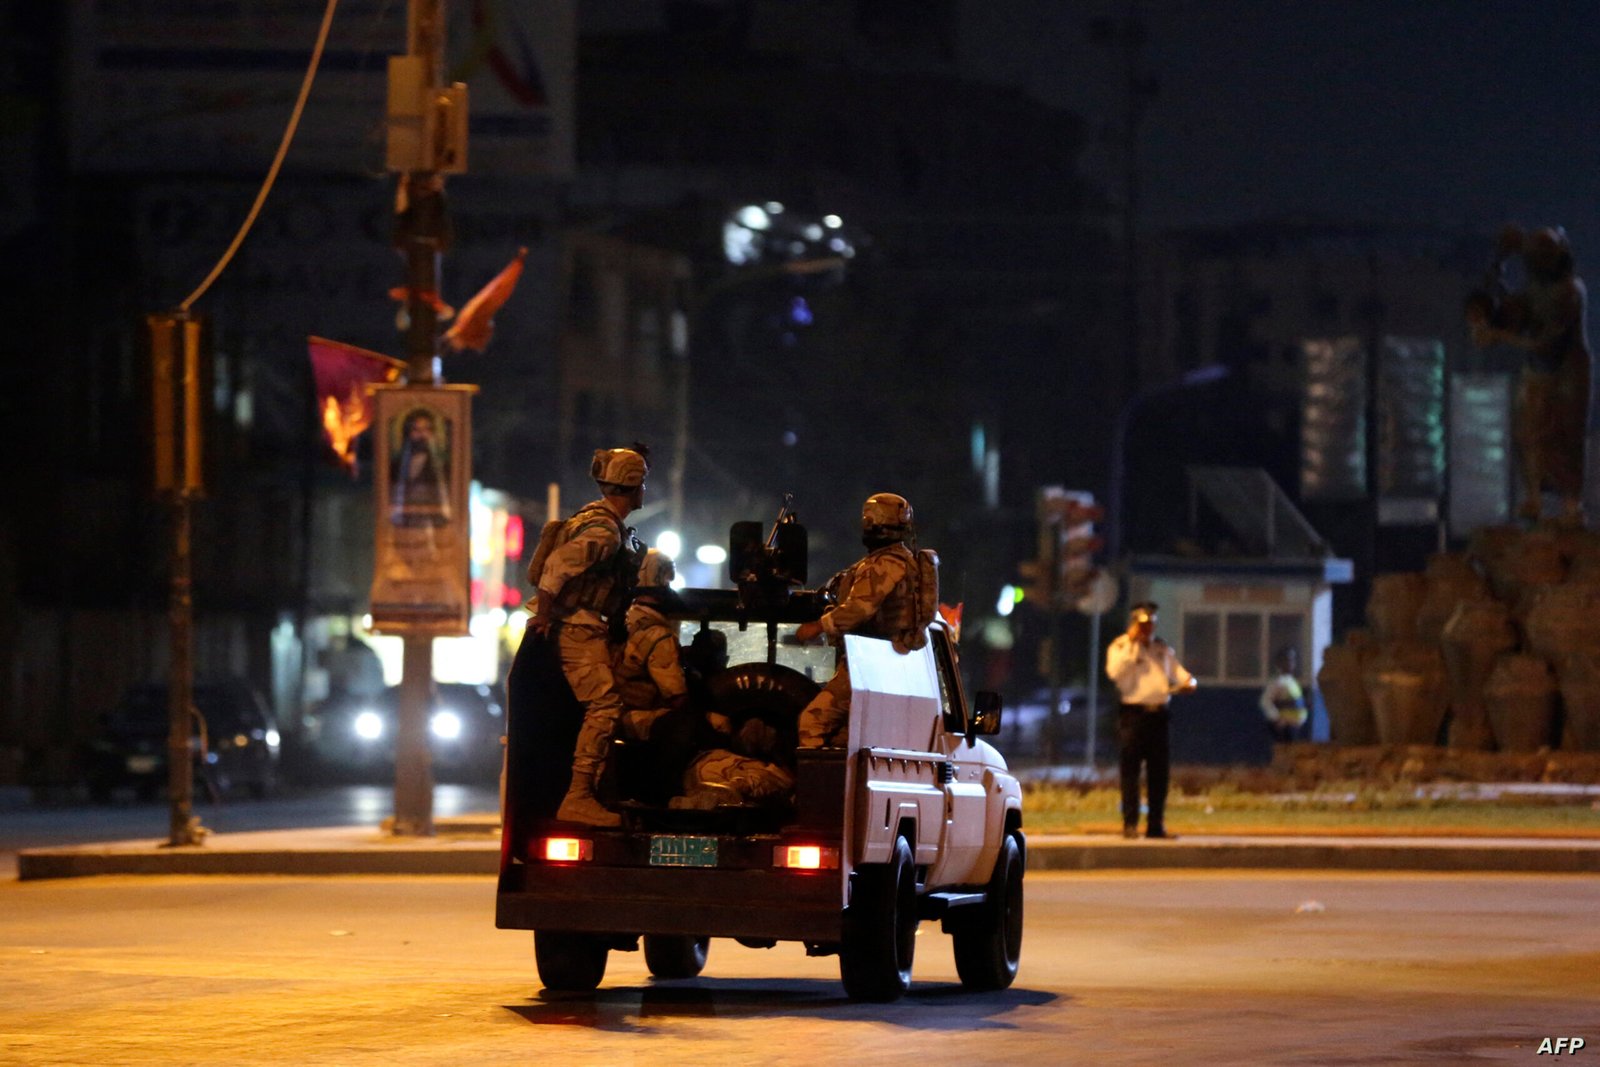 عمليات بغداد: الوضع الأمني في العاصمة مستقر والحياة طبيعية وحركة المرور مستمرة